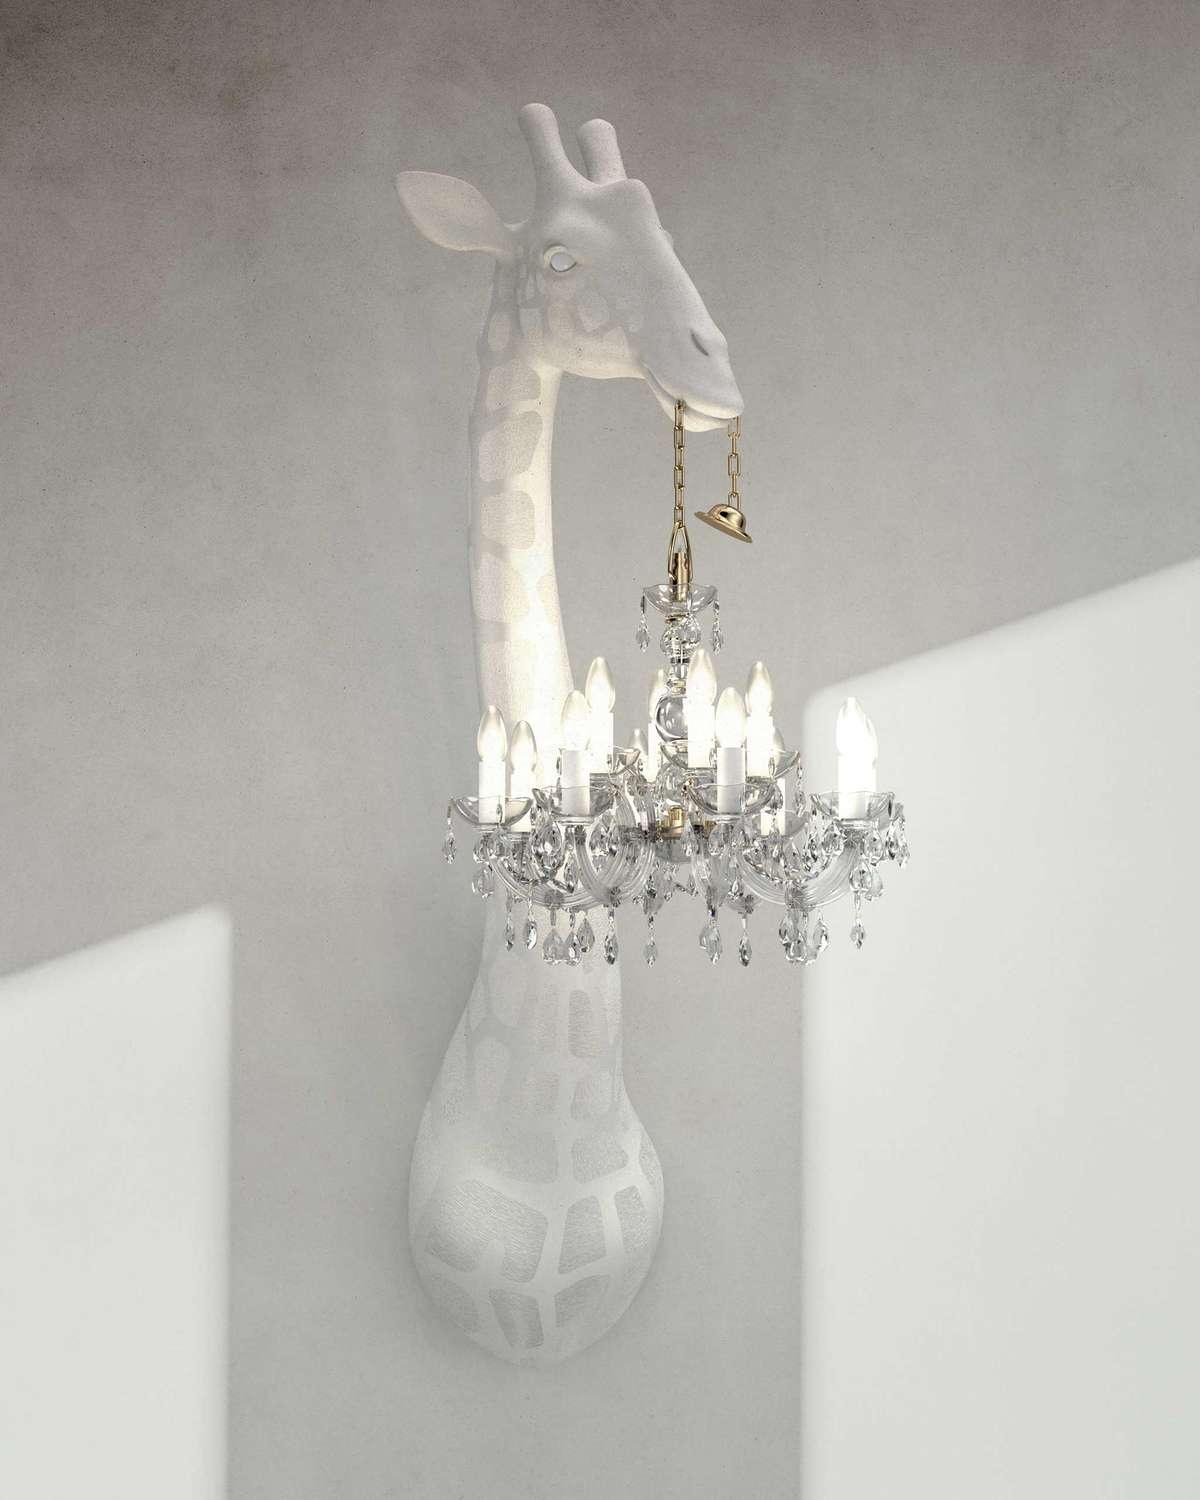 Zjawiskowa lampa ścienna, zaprojektowana przez Marcantonio, która w nietuzinkowy sposób ożywi każdy salon, sypialnię, czy elegancką restaurację. Majestatyczna żyrafa trzyma żyrandol w stylu Marii Teresy w miniaturowej wersji. Jest to idealne połączenie dobrego designu z funkcjonalnością. 